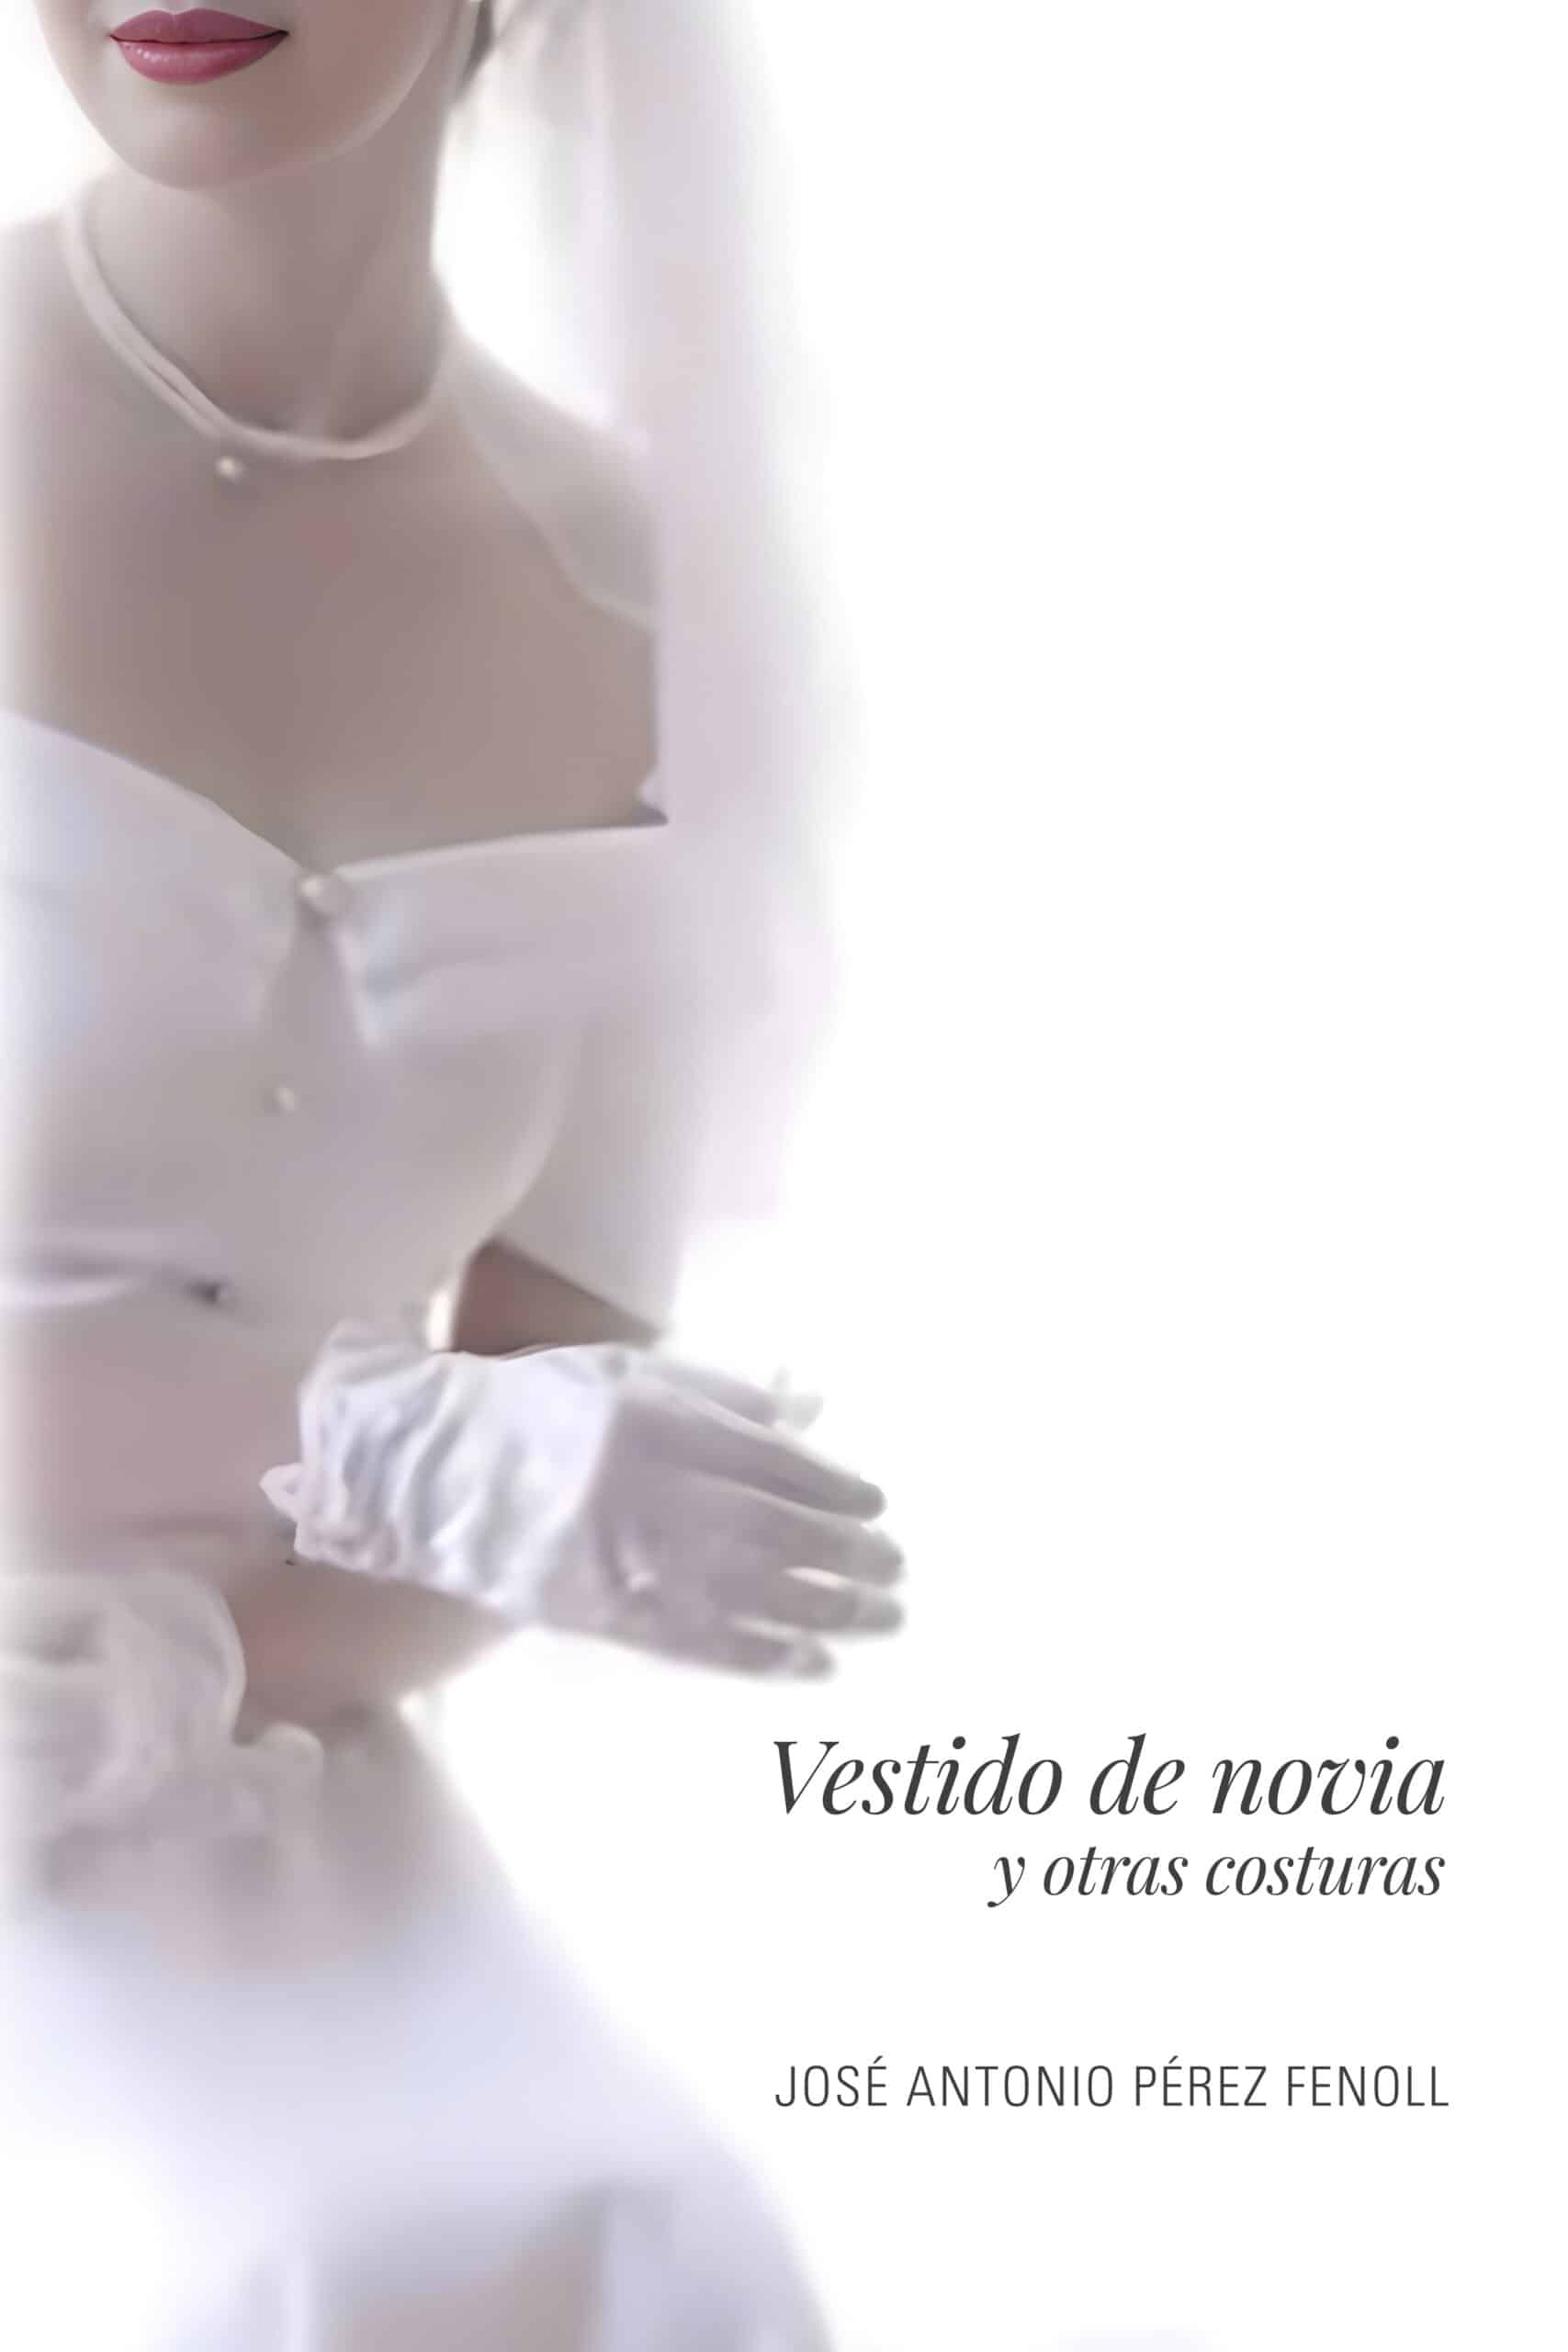 Vestido de novia, de José Antonio Pérez Fenoll